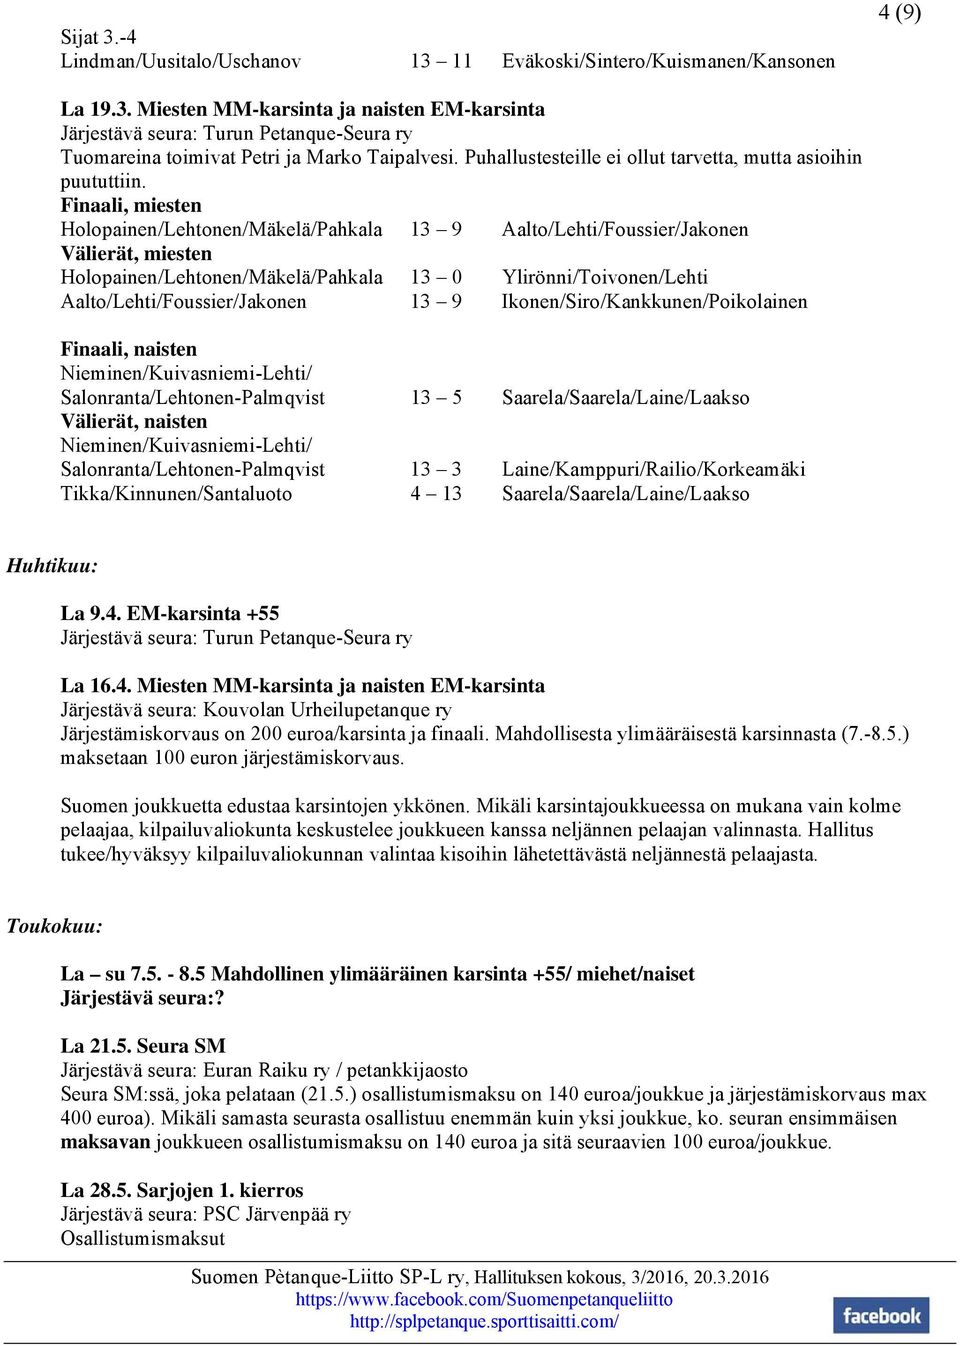 Finaali, miesten Holopainen/Lehtonen/Mäkelä/Pahkala 13 9 Aalto/Lehti/Foussier/Jakonen Välierät, miesten Holopainen/Lehtonen/Mäkelä/Pahkala 13 0 Ylirönni/Toivonen/Lehti Aalto/Lehti/Foussier/Jakonen 13